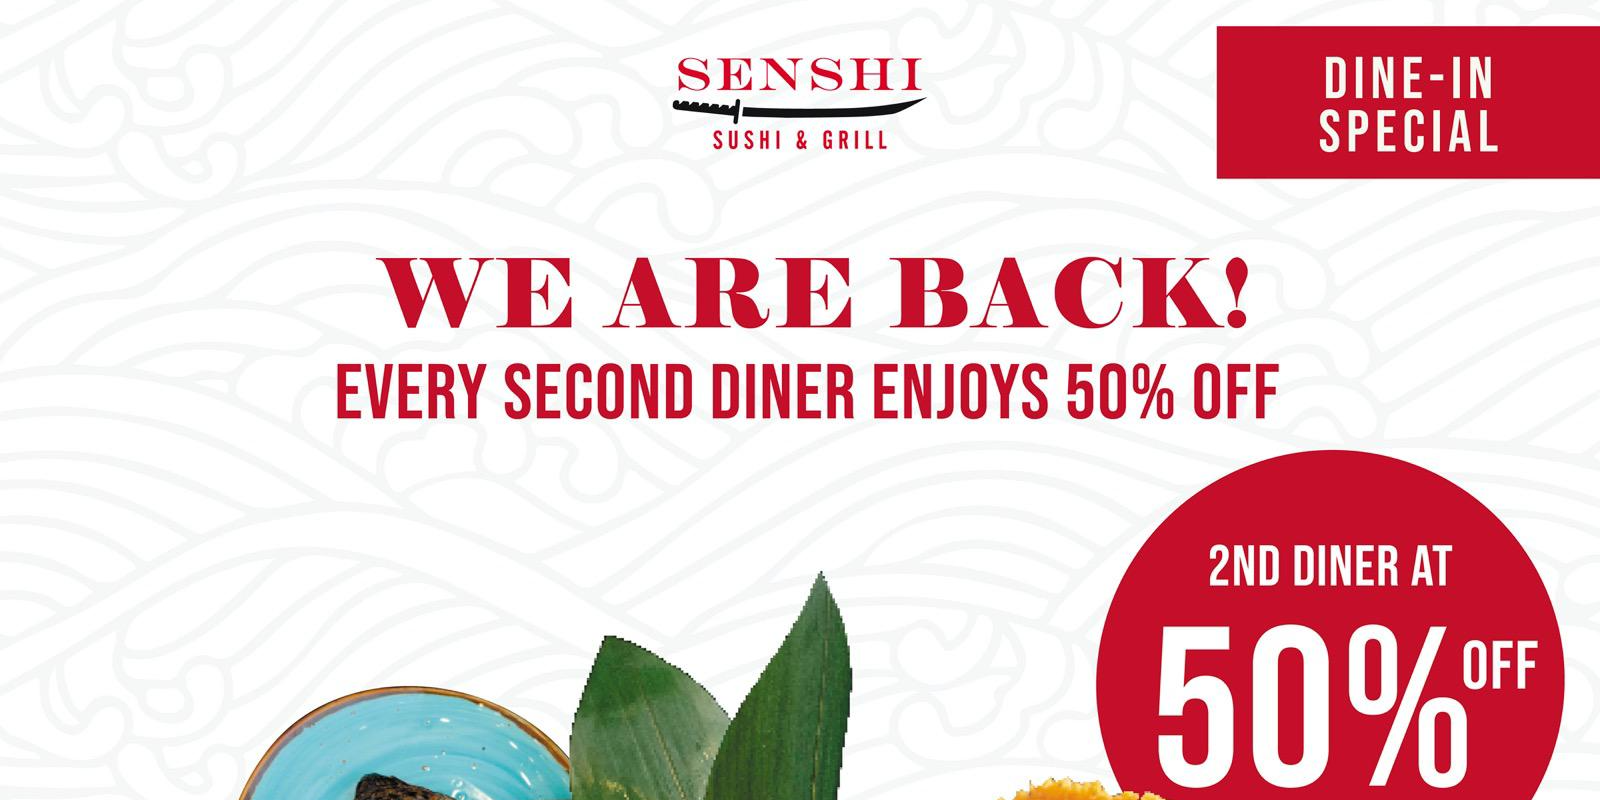 SENSHI’s 50% OFF for 2nd diner is back!